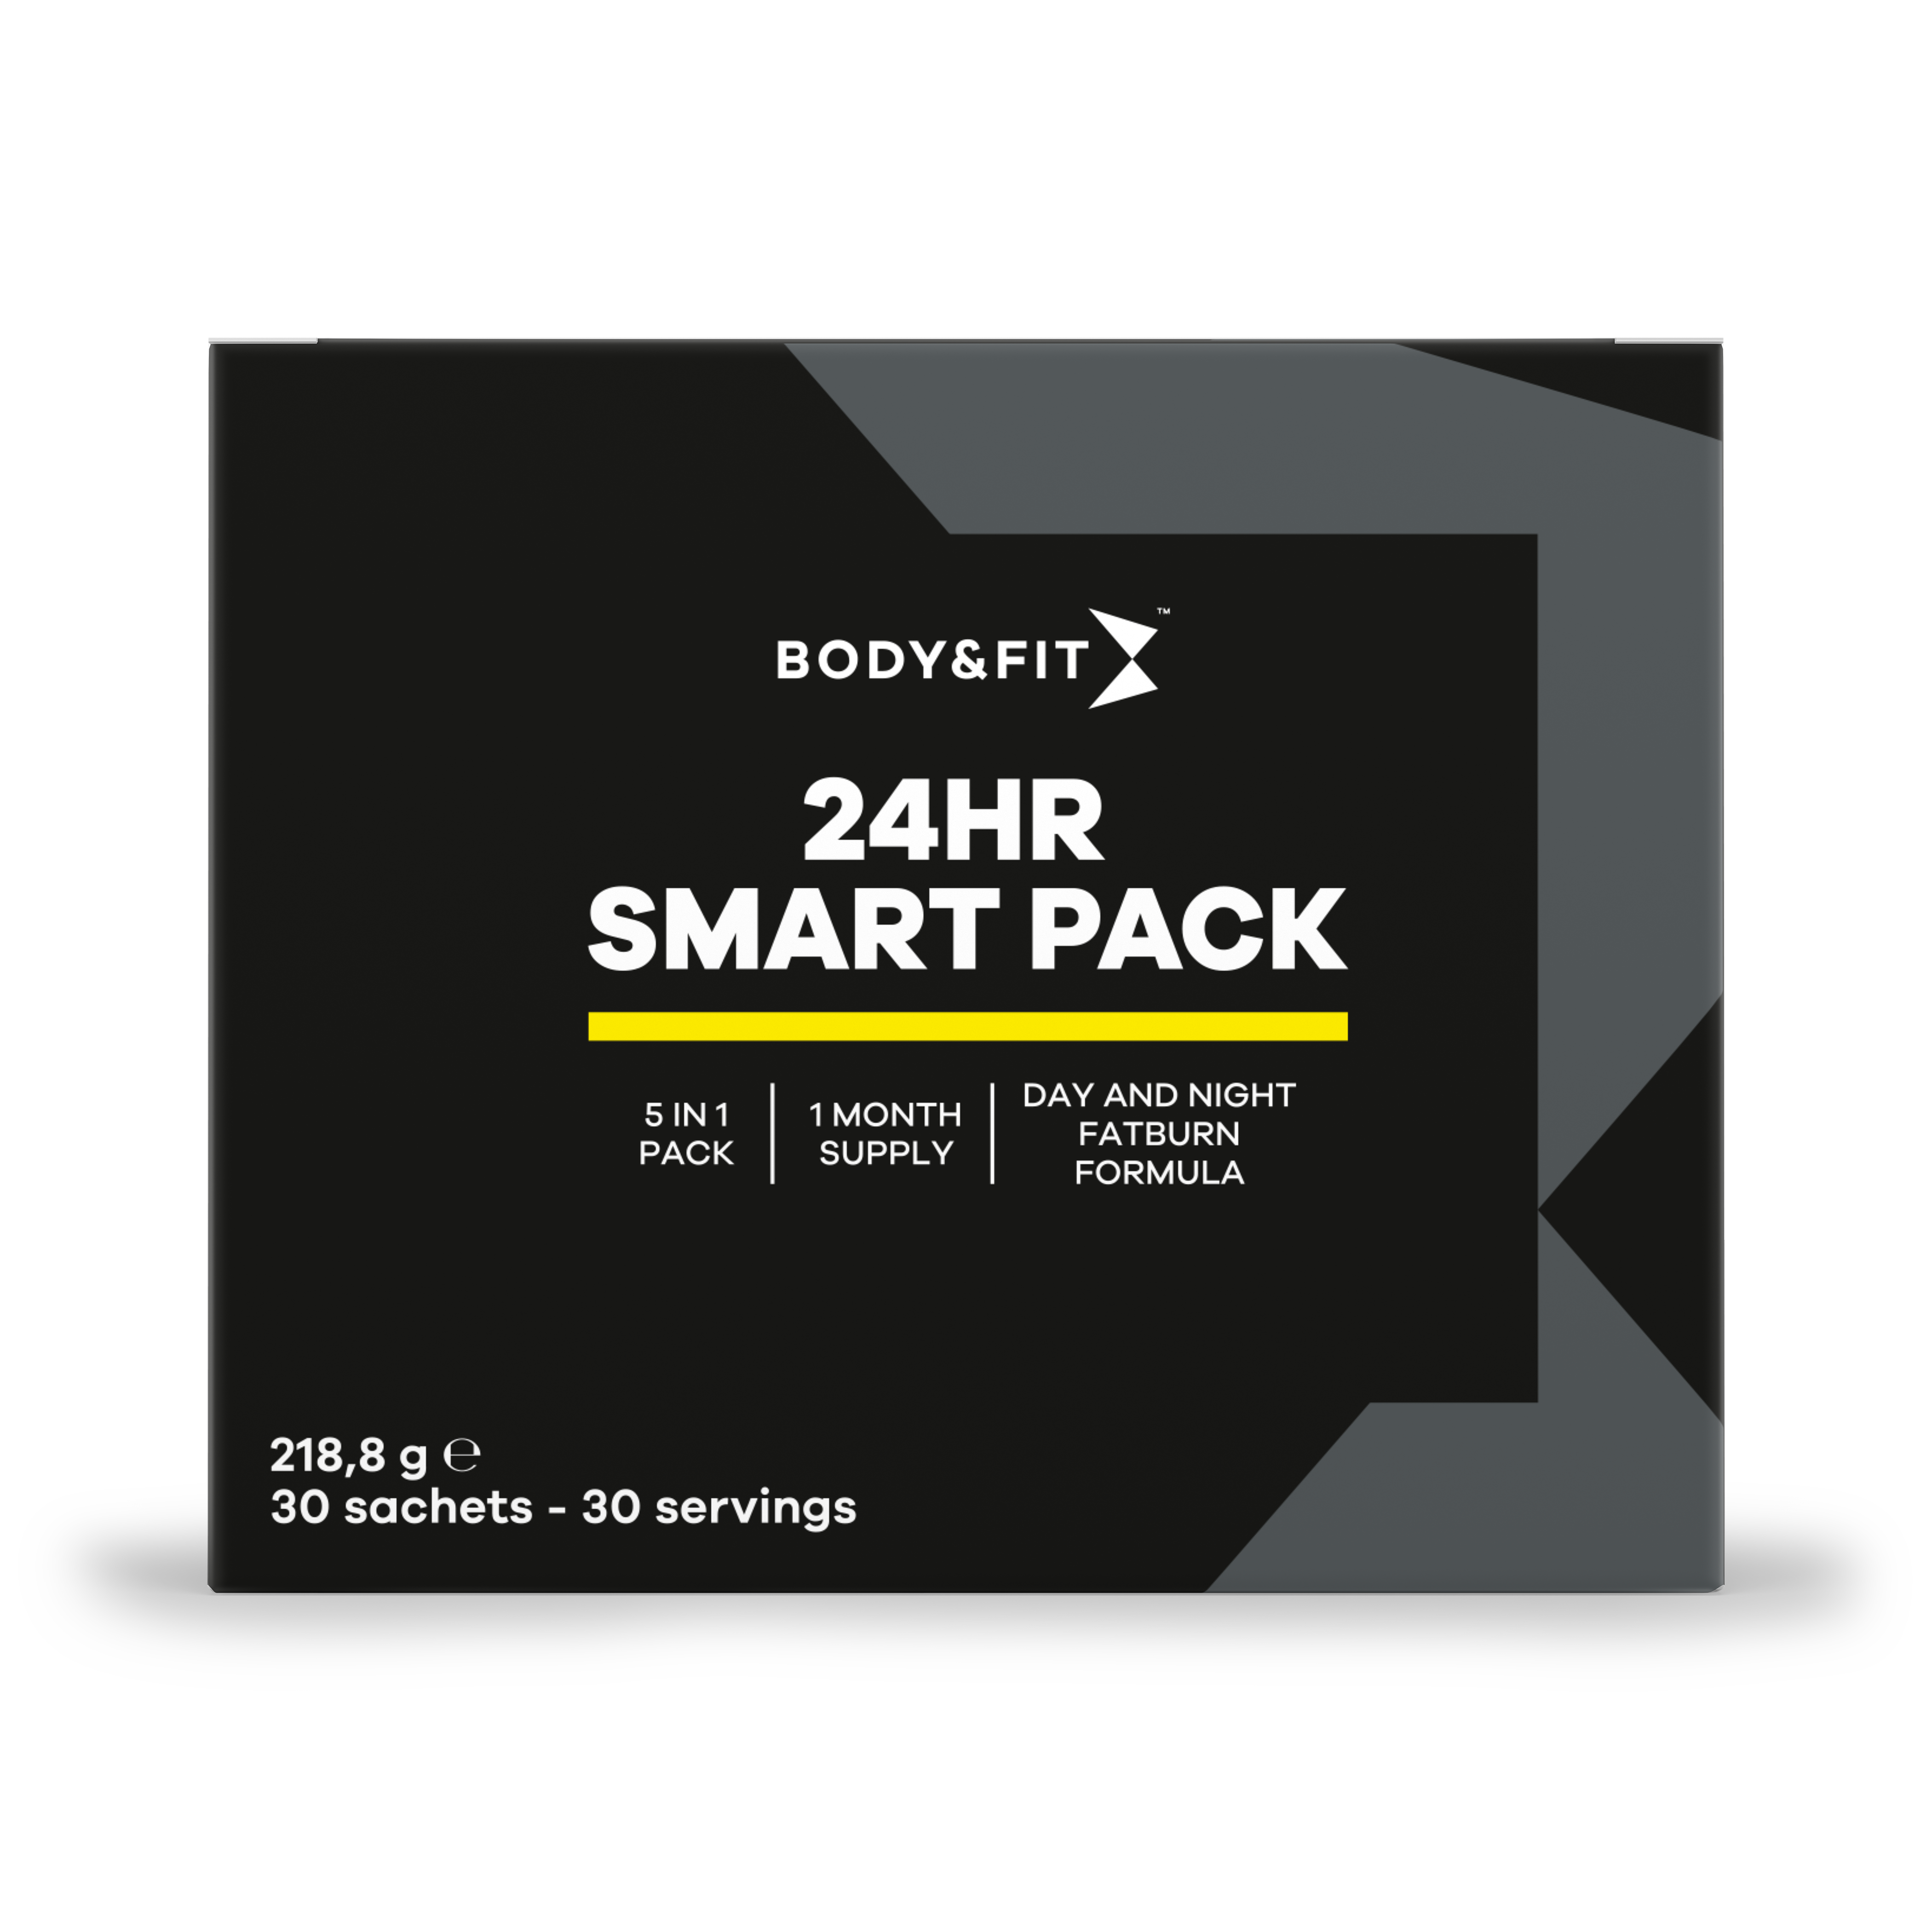 24HR Smart Pack